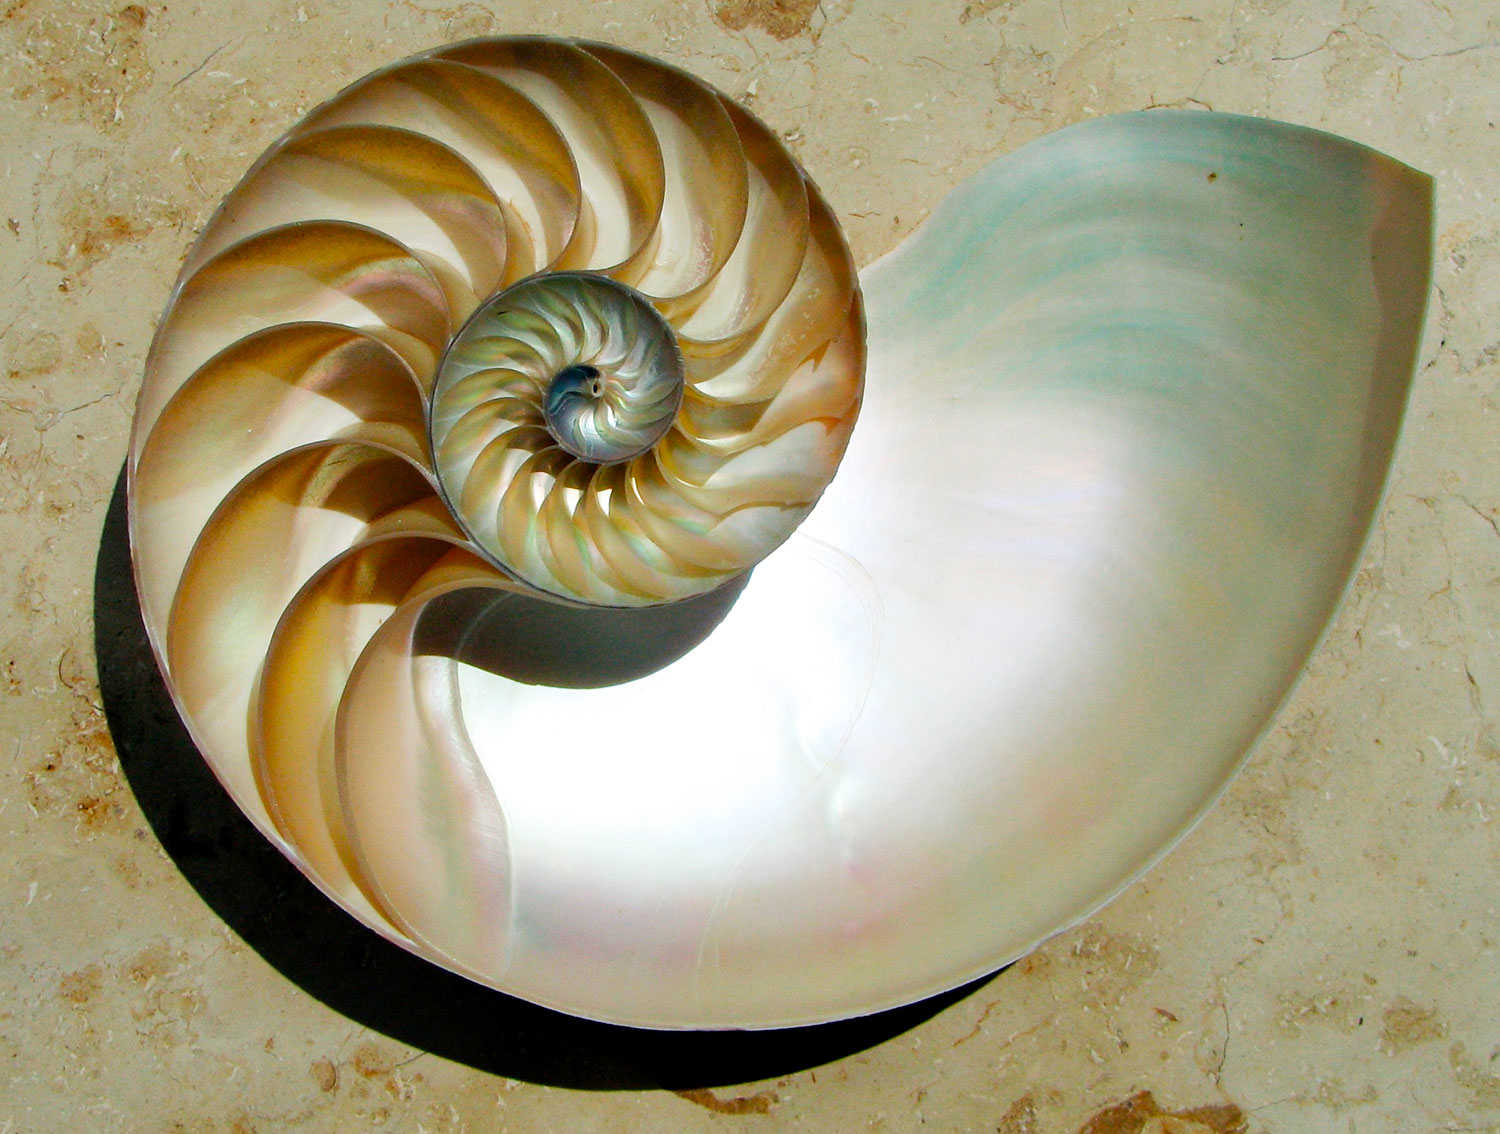 Nautilus con nácar en su interior